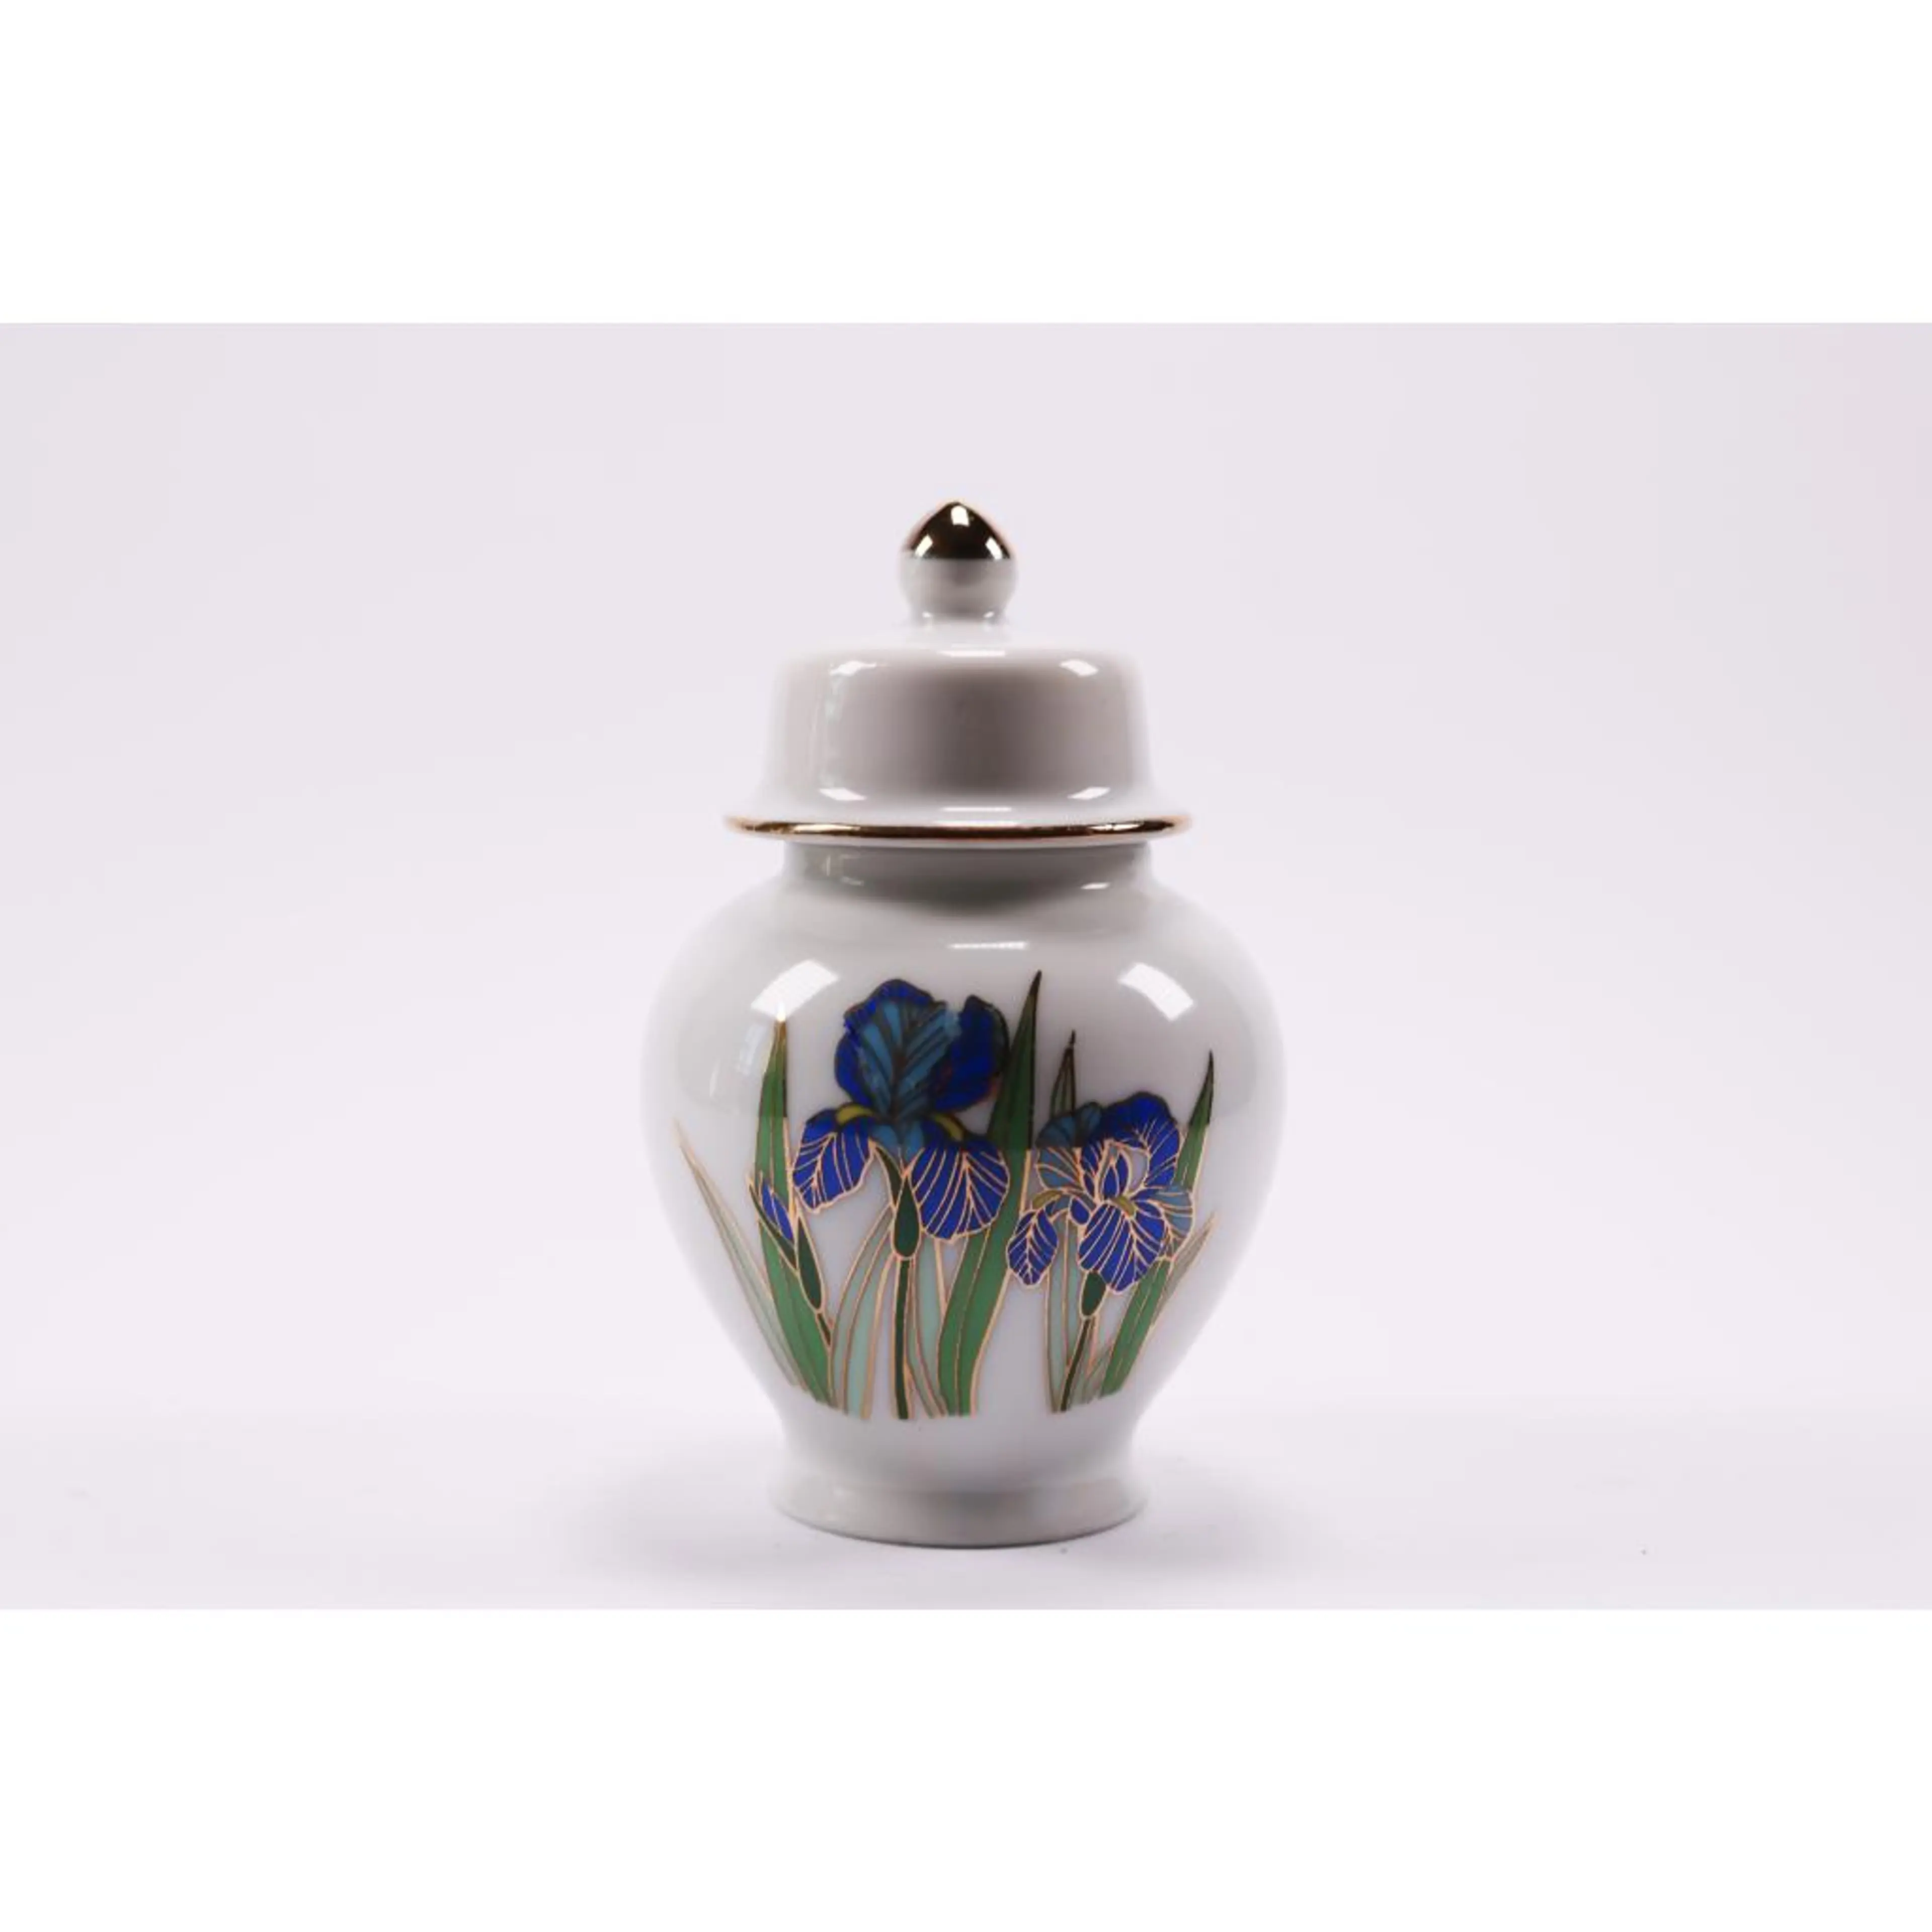 Original Porcelain Vase Ginger Jar W Lid Leaves Flowers Floral Vintage